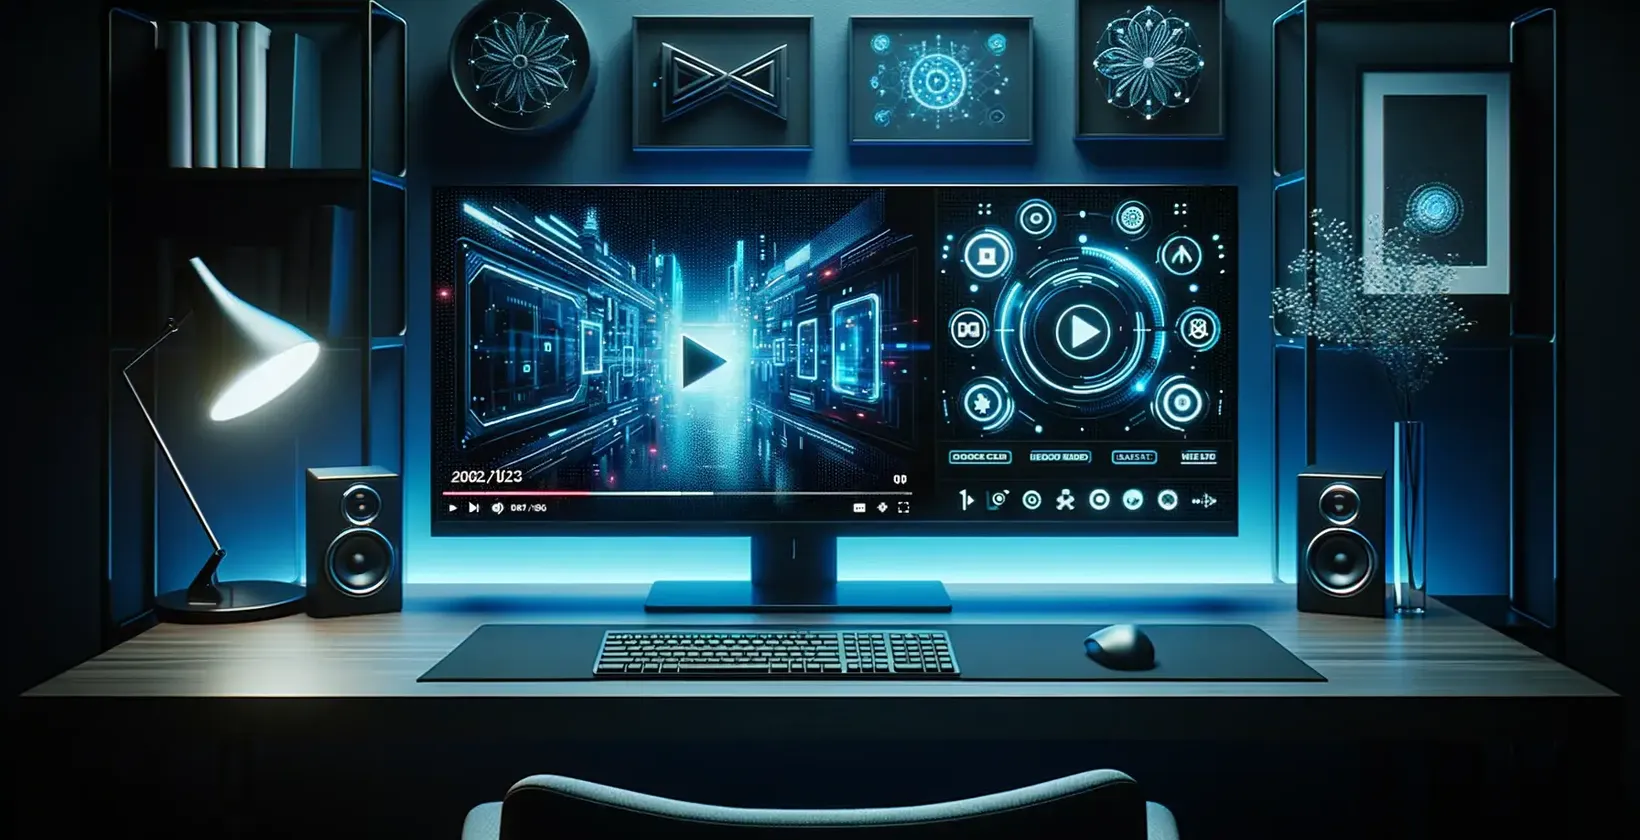 Λογισμικό μετατροπής βίντεο σε κείμενο για PC σε ένα χώρο εργασίας με δυναμικά γραφικά, τέχνη, ηχεία και φωτισμό περιβάλλοντος